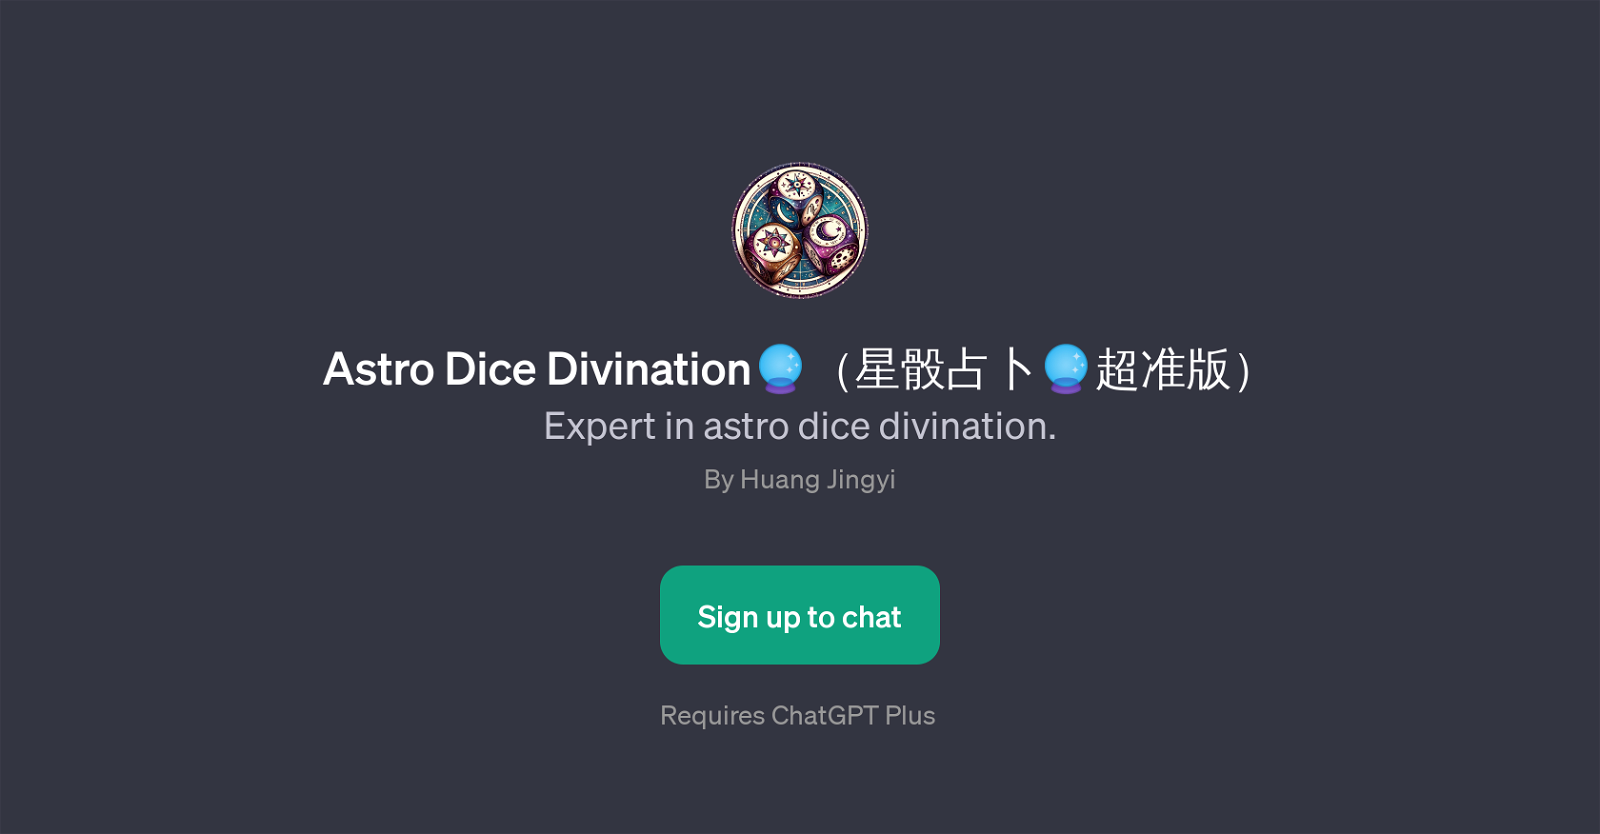 Astro Dice Divination website